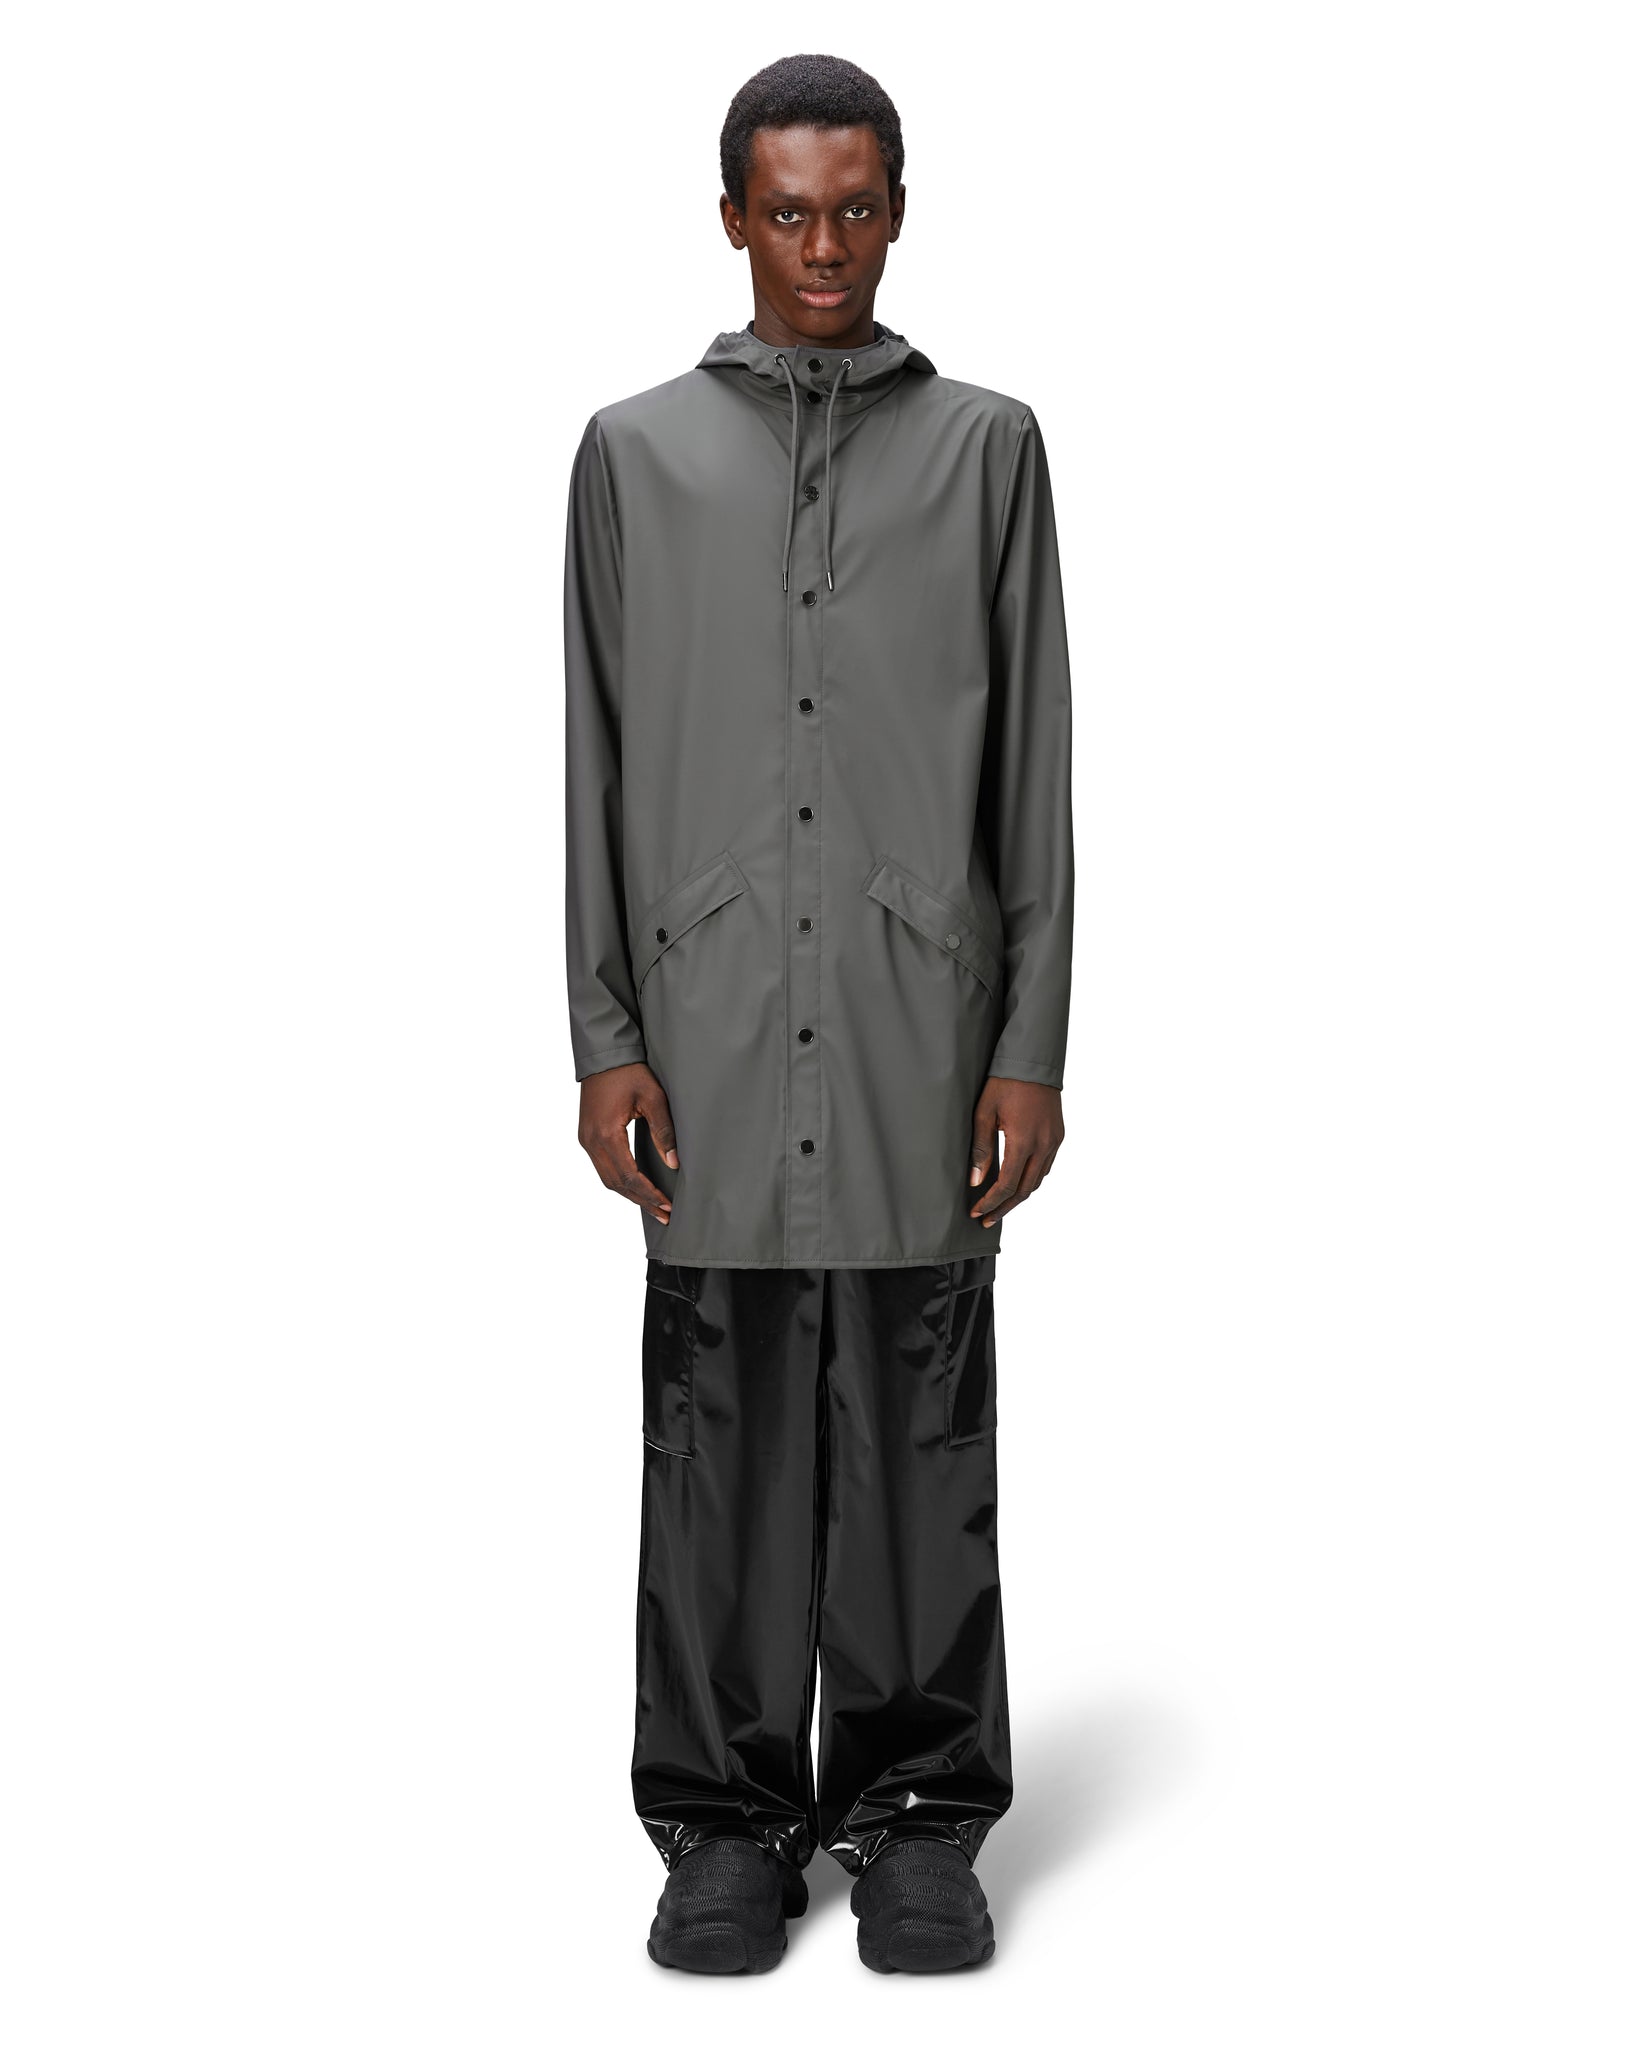 Chubasquer Long Jacket - Grey (Unisex)